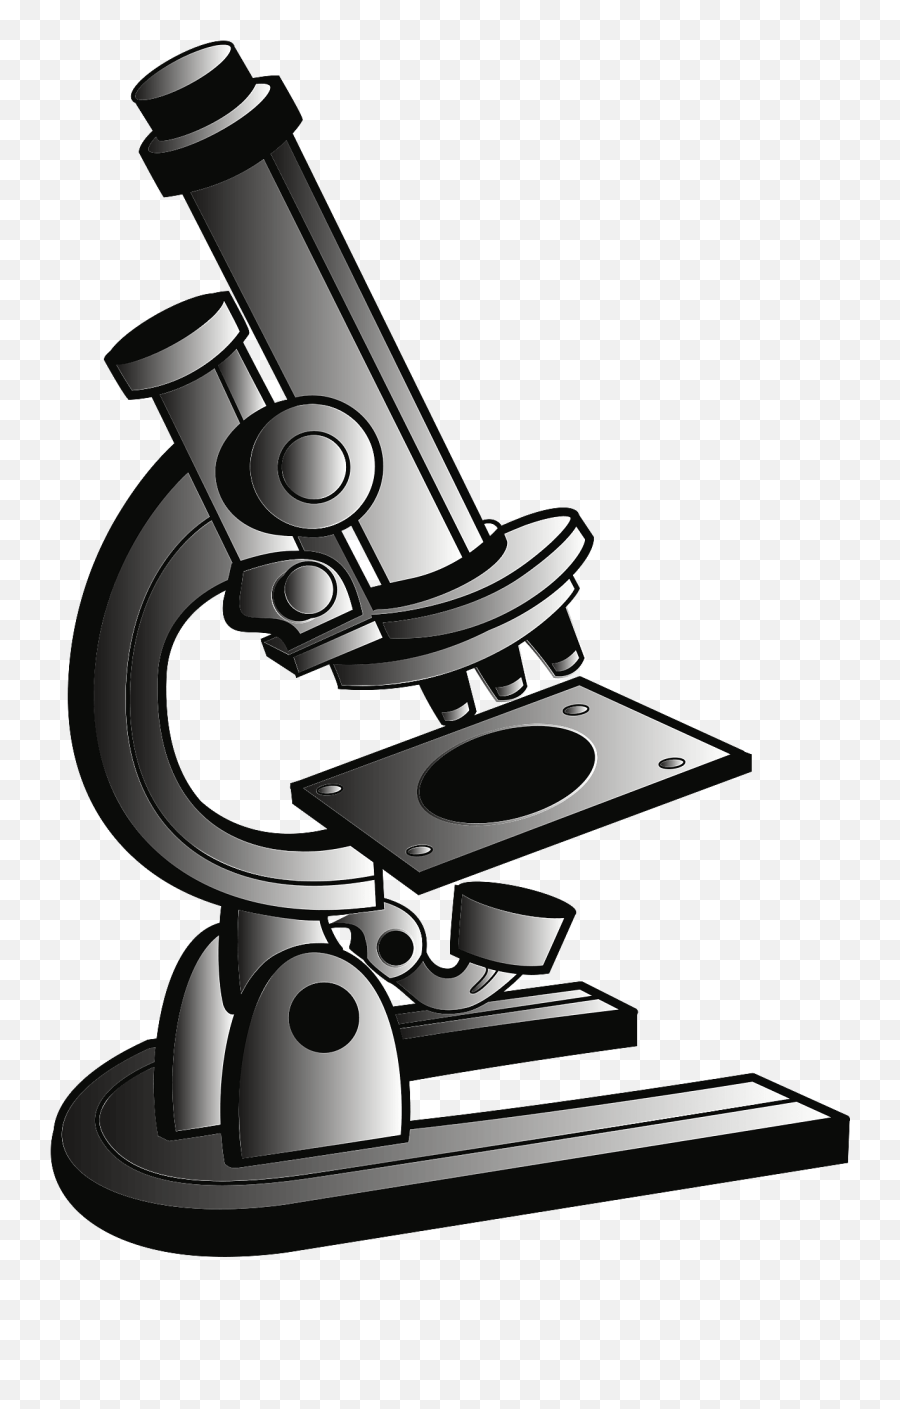 Microscope - Microscope Clipart Emoji,Microscope Clipart